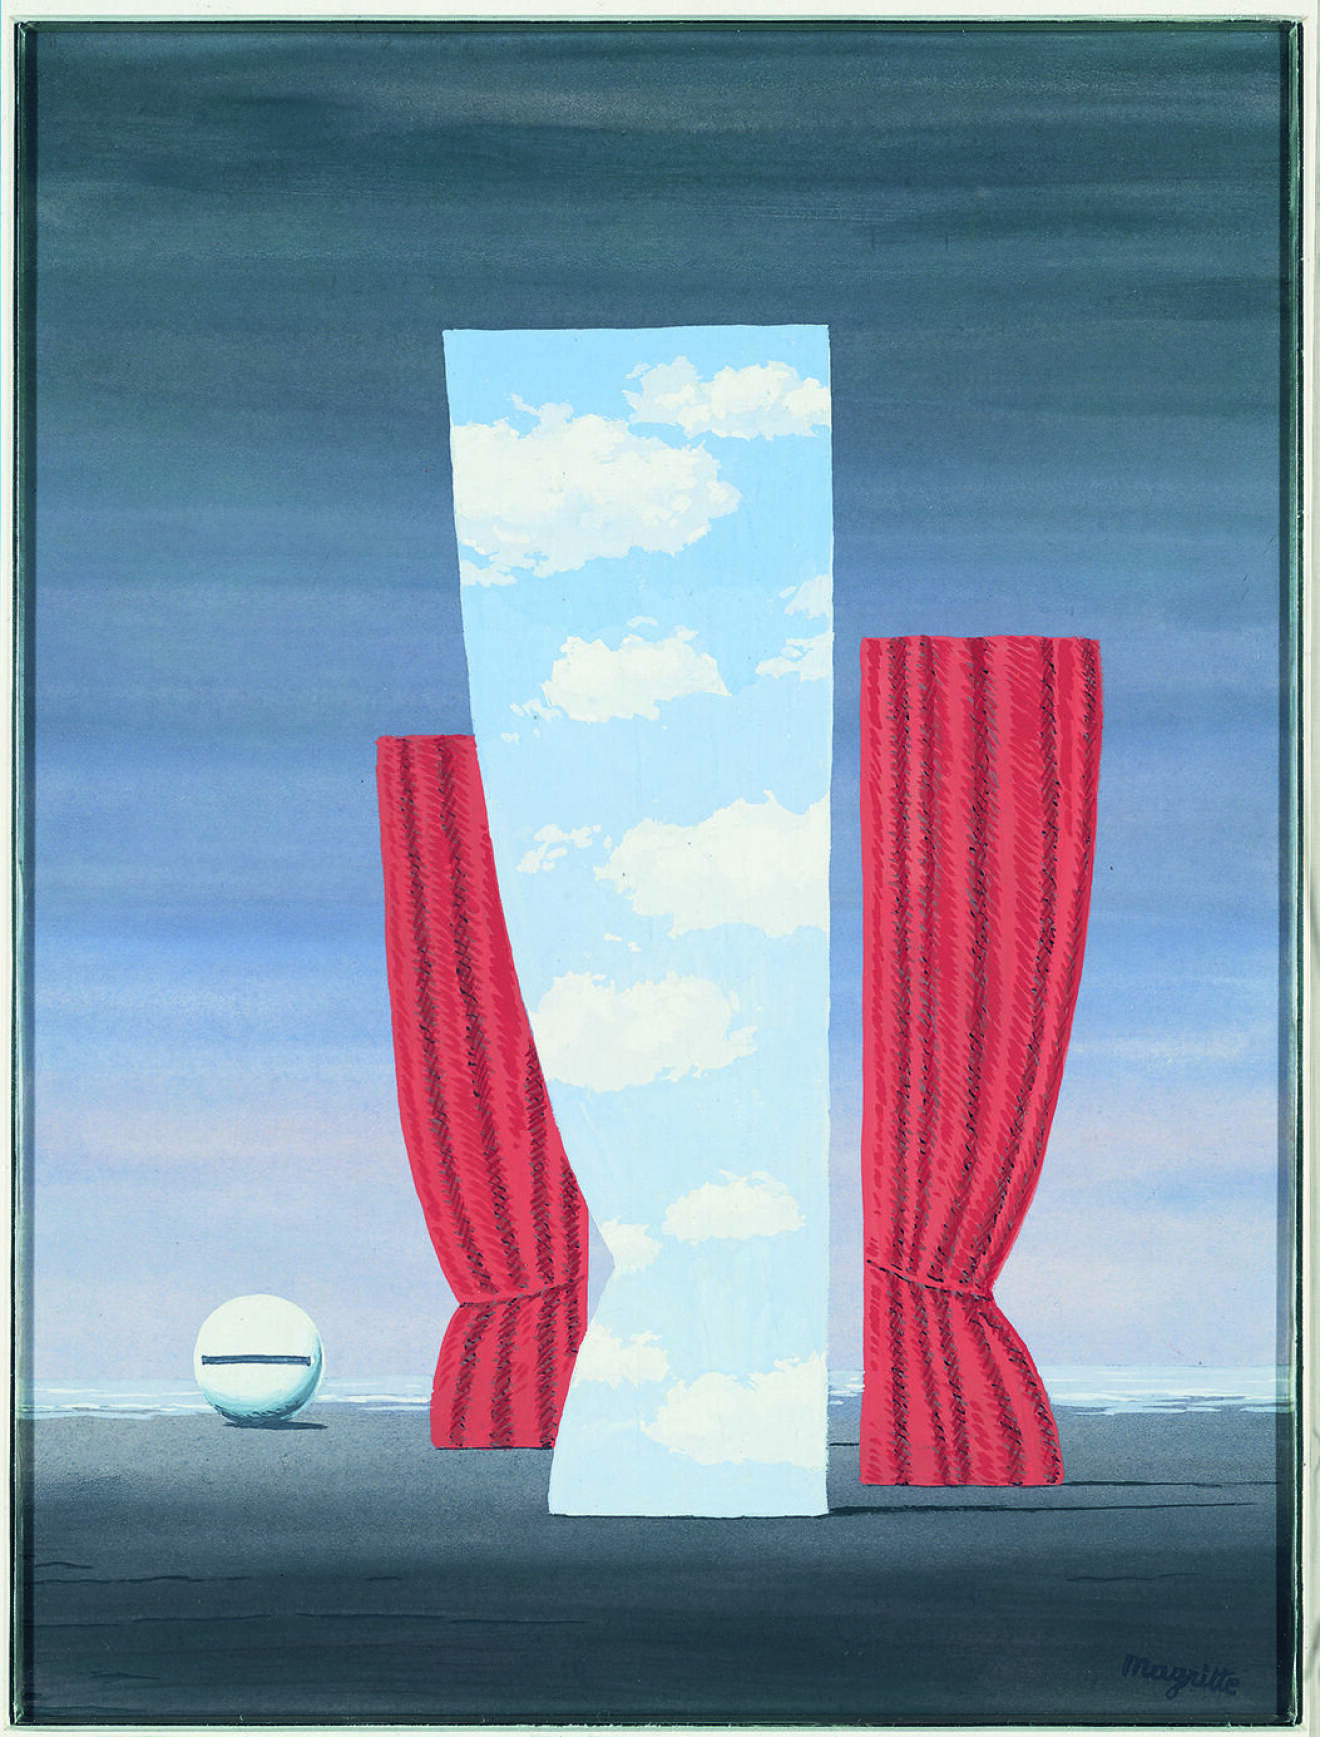 René Magrittes tavla La Joconde från 1964